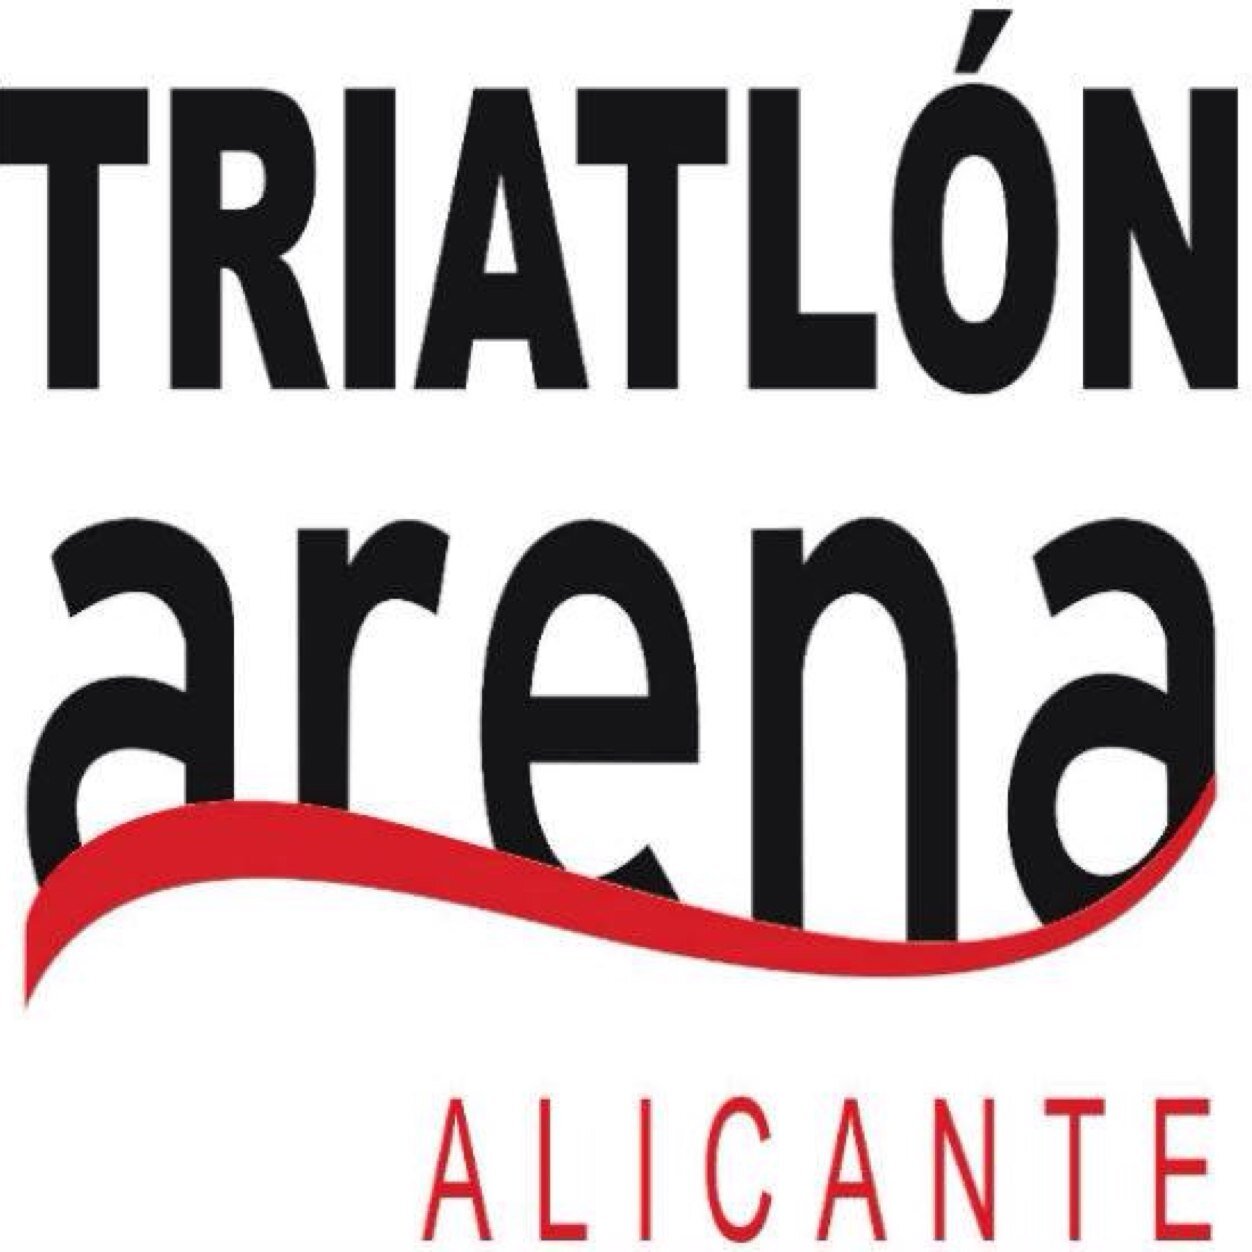 Club de Triatlón ubicado en Alicante. Somos mas de 100 triatletas de todos los niveles. Hacemos del triatlón un deporte de equipo